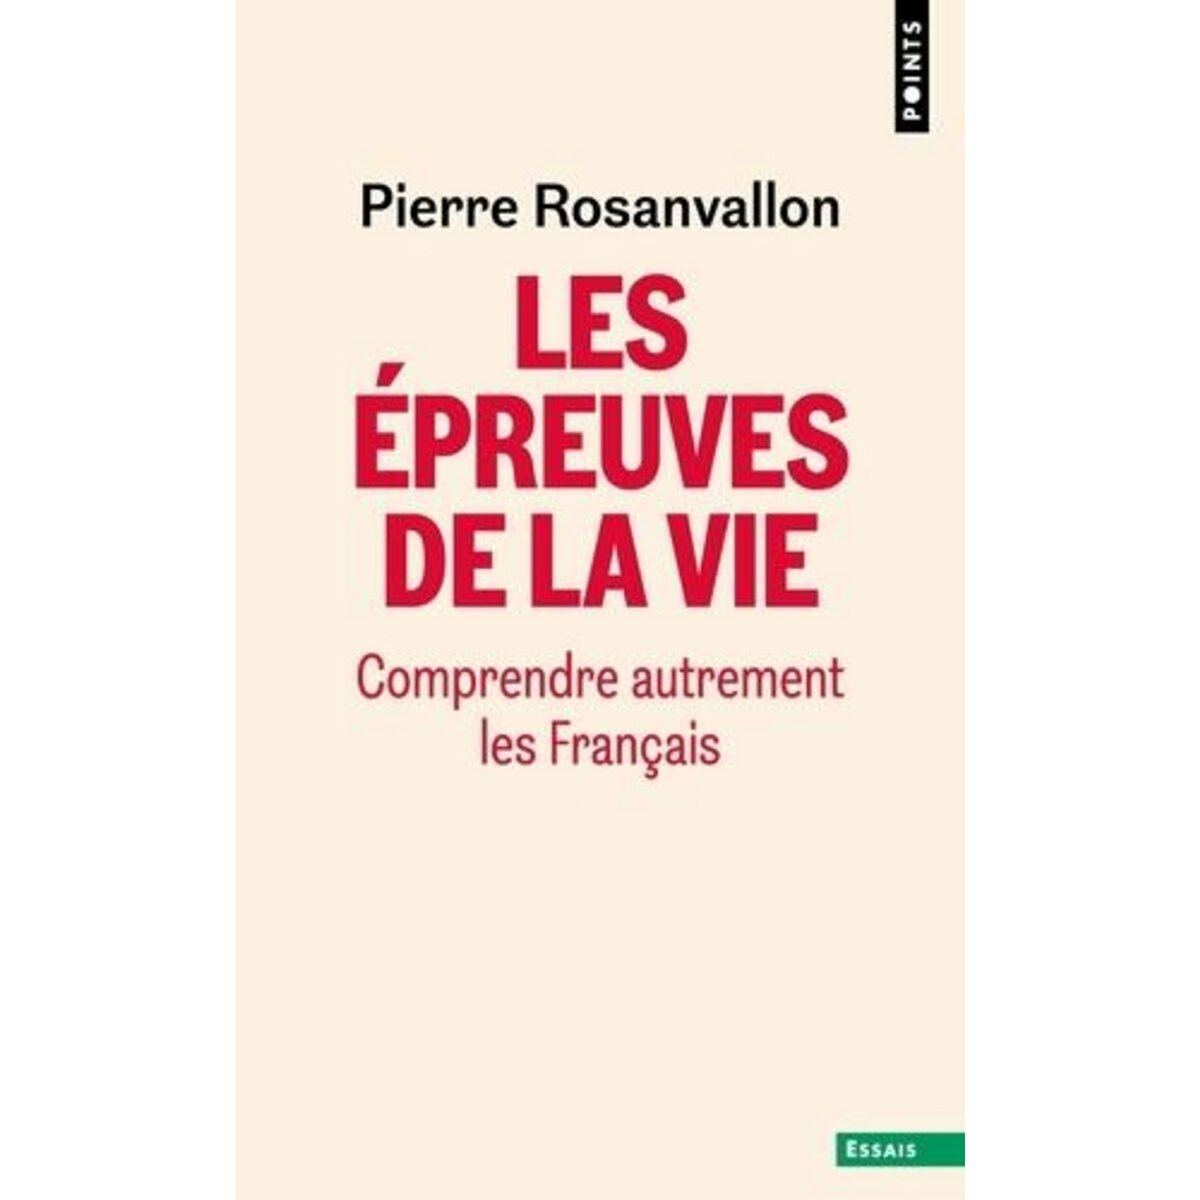  LES EPREUVES DE LA VIE. COMPRENDRE AUTREMENT LES FRANCAIS, Rosanvallon Pierre